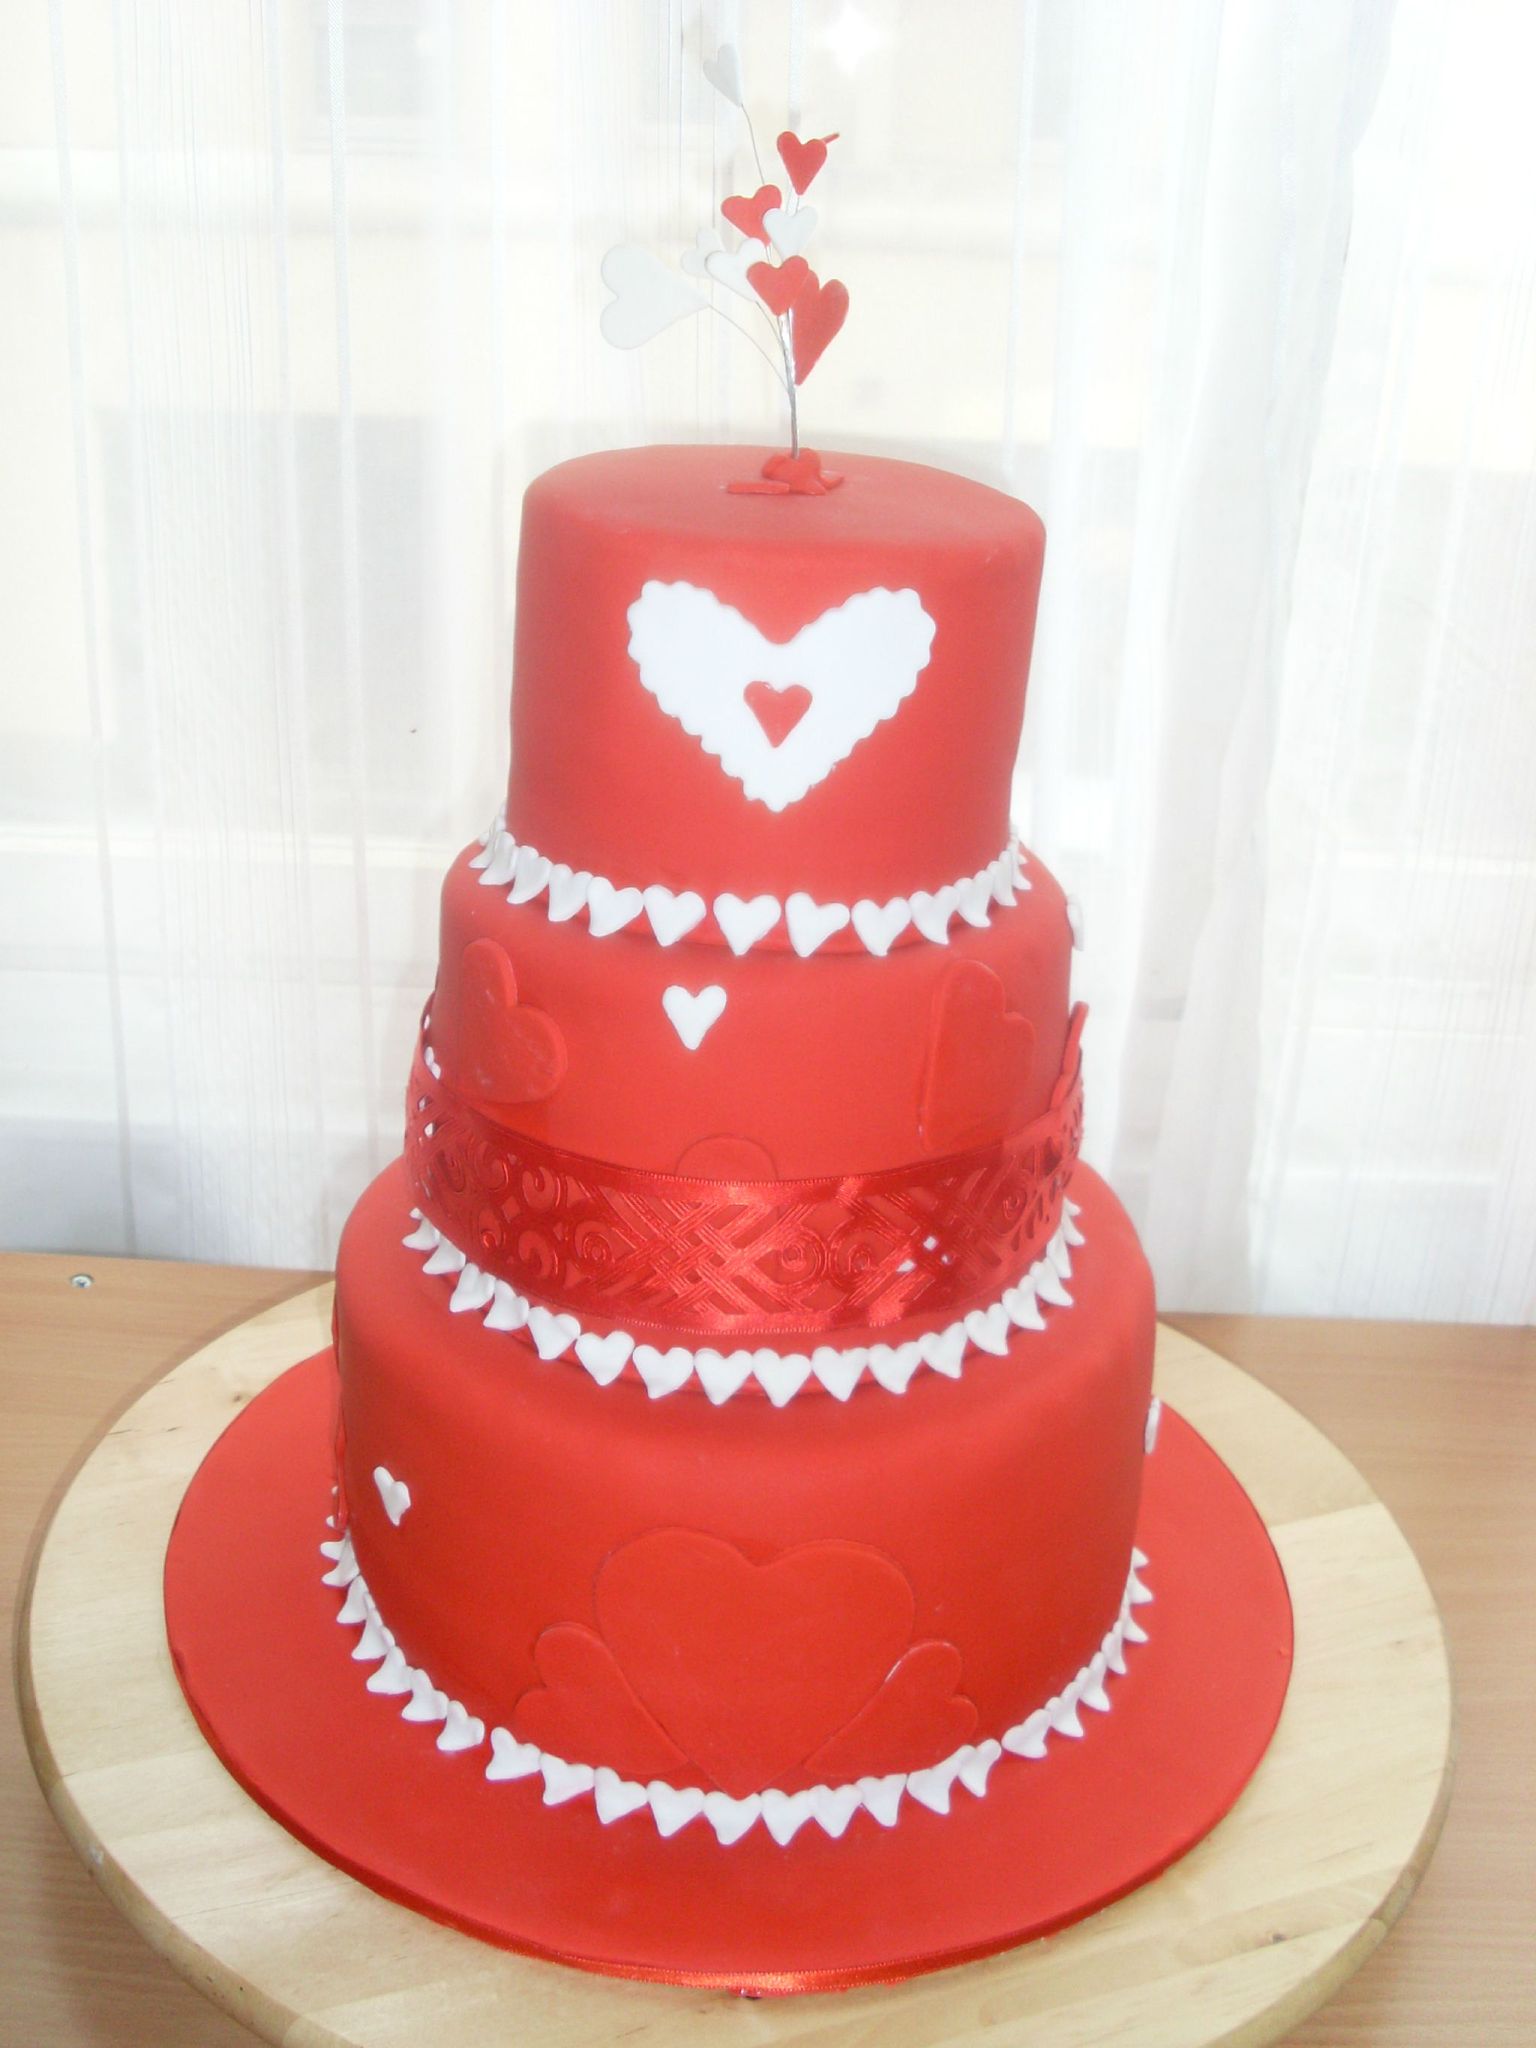 Wedding Cake Rouge Sur Le Theme De L Amour Pour Celebrer 10 Ans De Couple Julia S Wedding Cakes Www Juliasweddingcakes Com